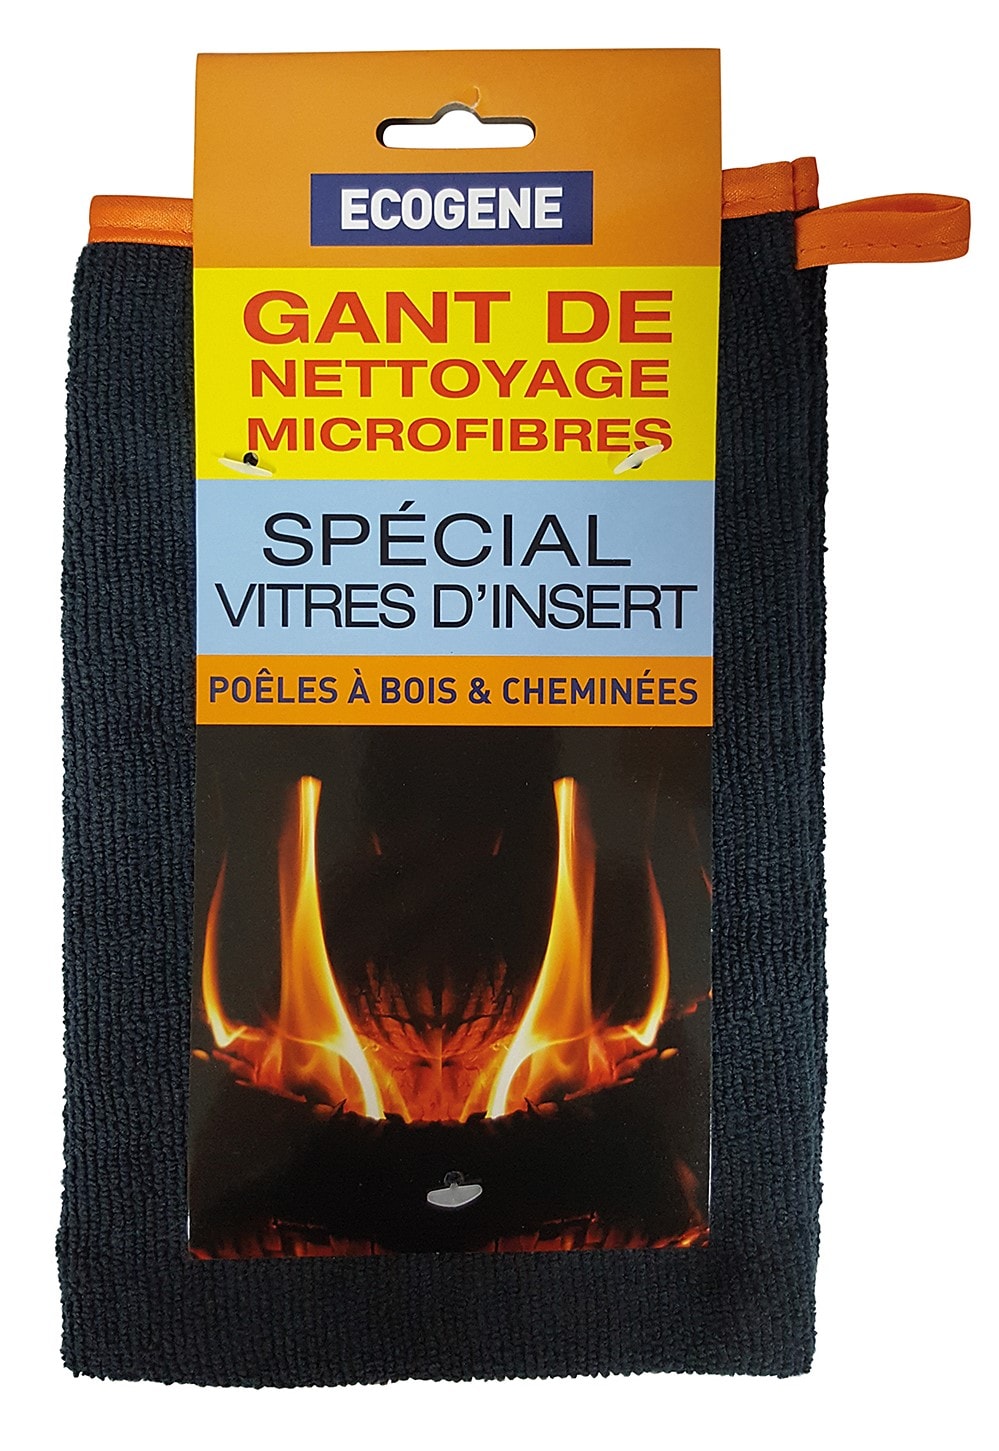 Gant Anti-Chaleur - France Vitre Insert, ma vitre de cheminée sur